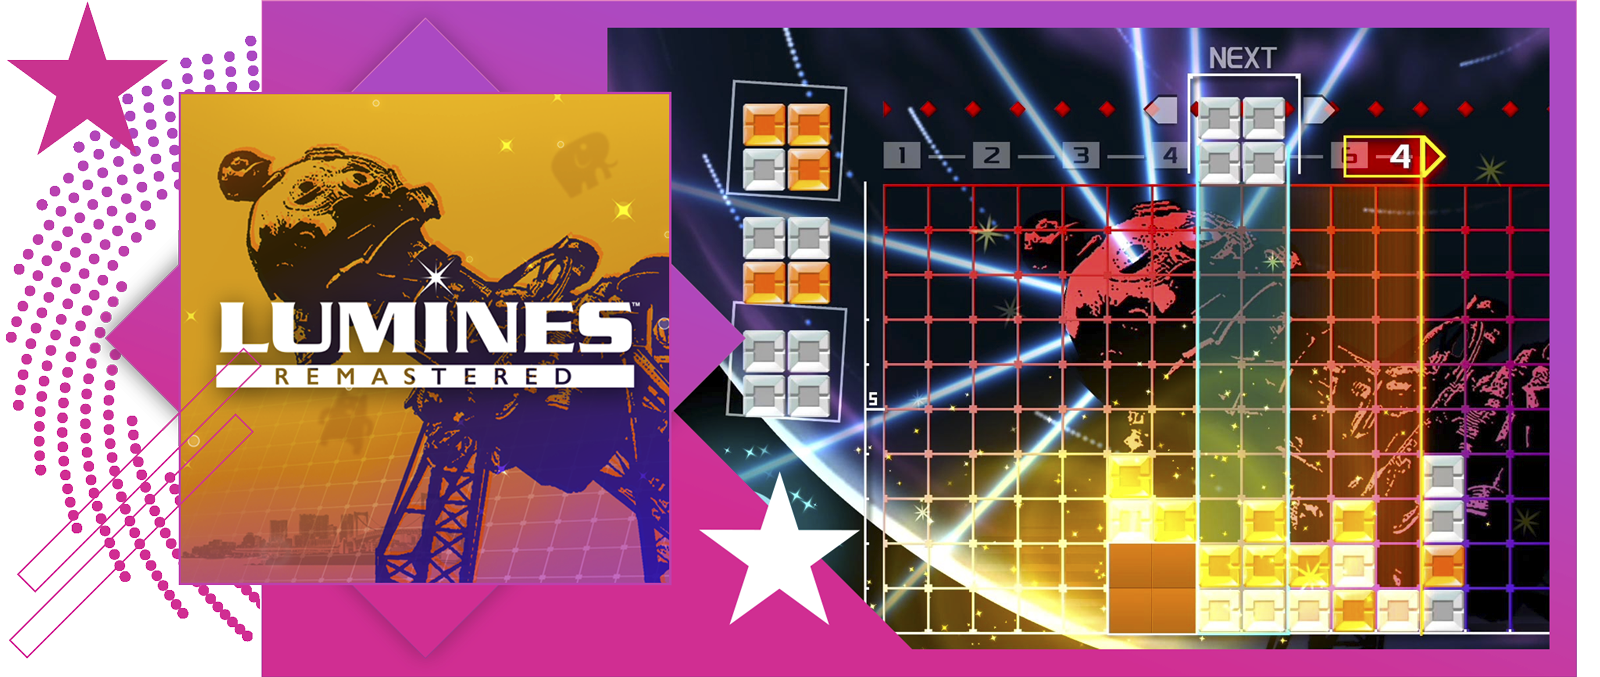 最佳節奏遊戲的特色影像，展示《Lumines Remastered》的主要美術設計和遊戲畫面。